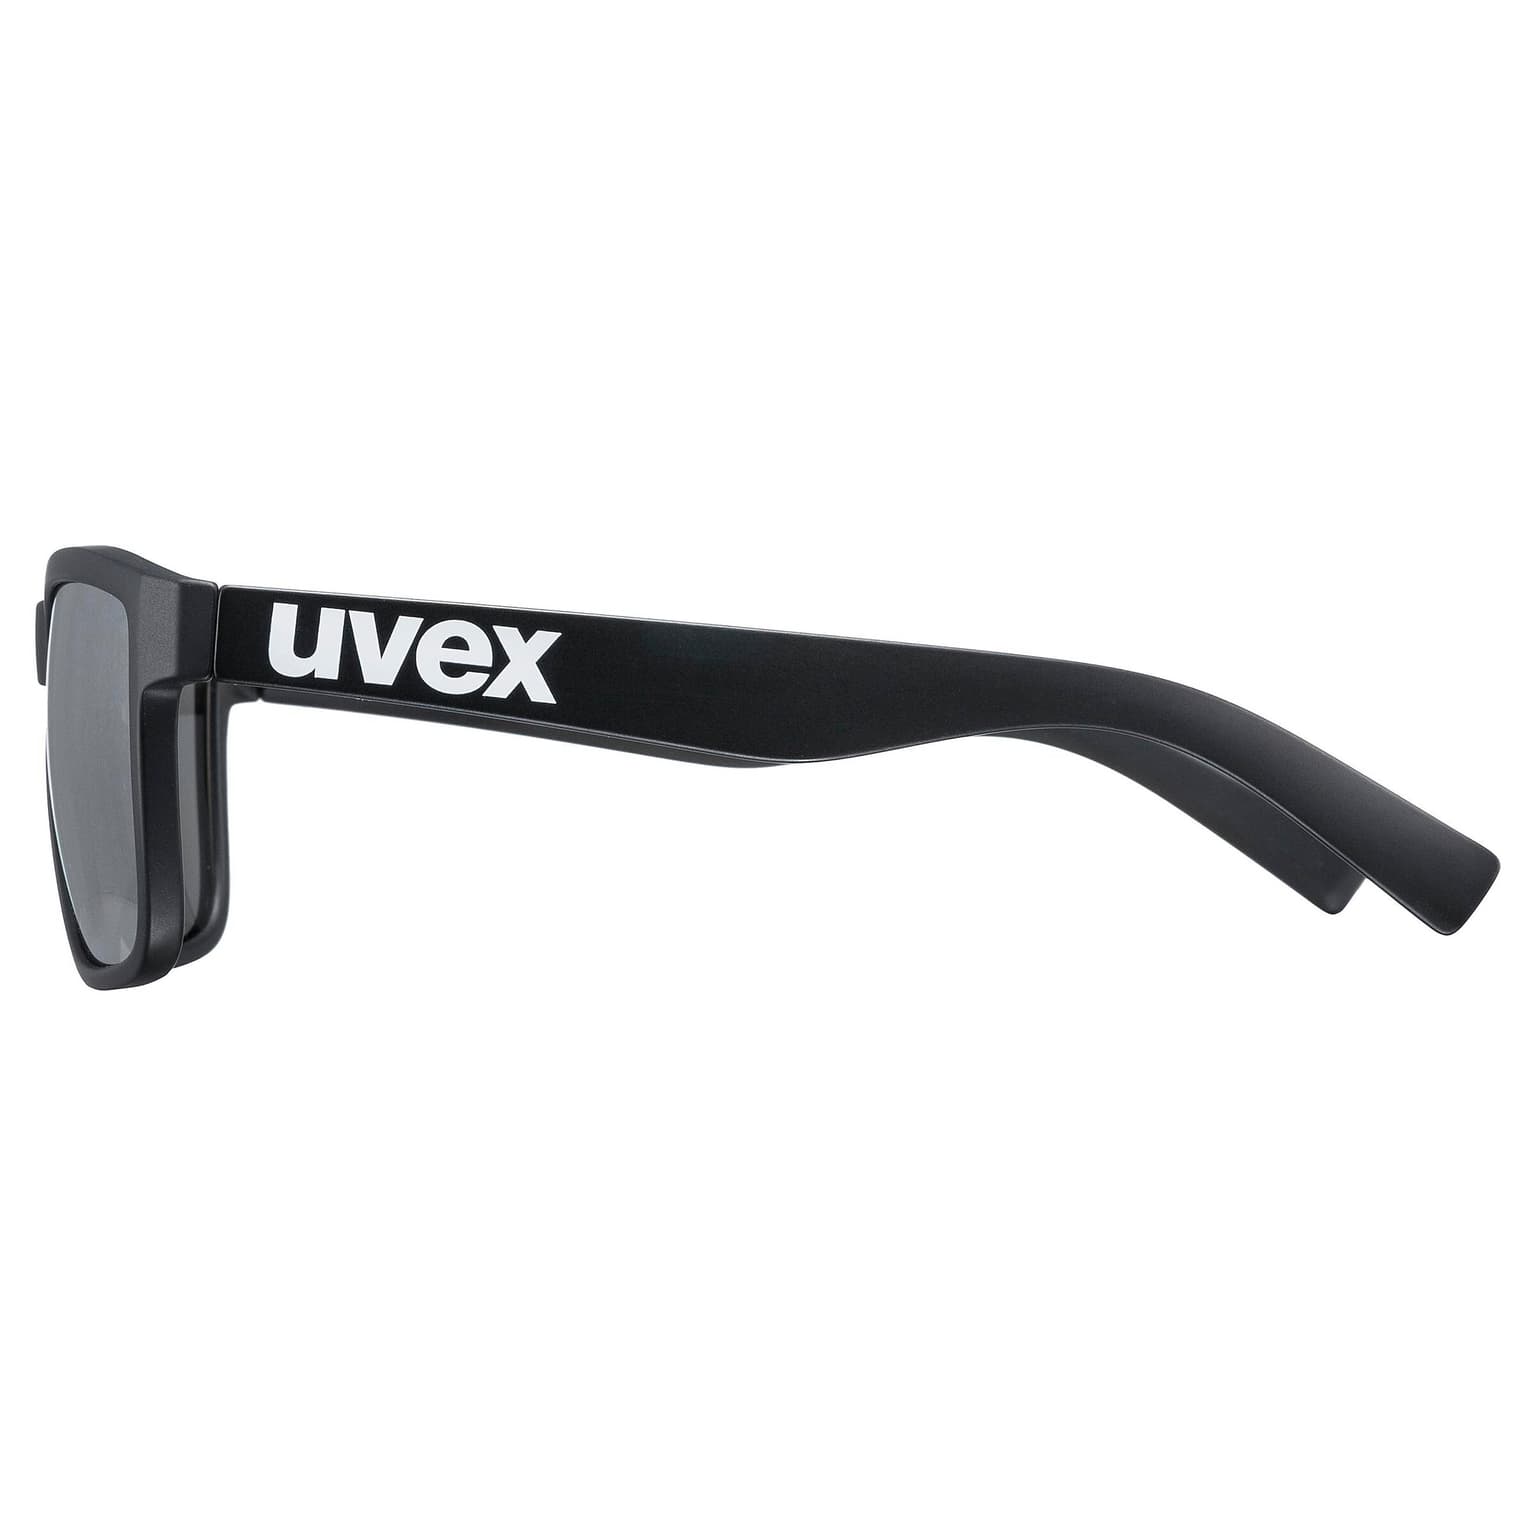 Uvex Uvex Lifestyle lgl 39 Sportbrille nero 2